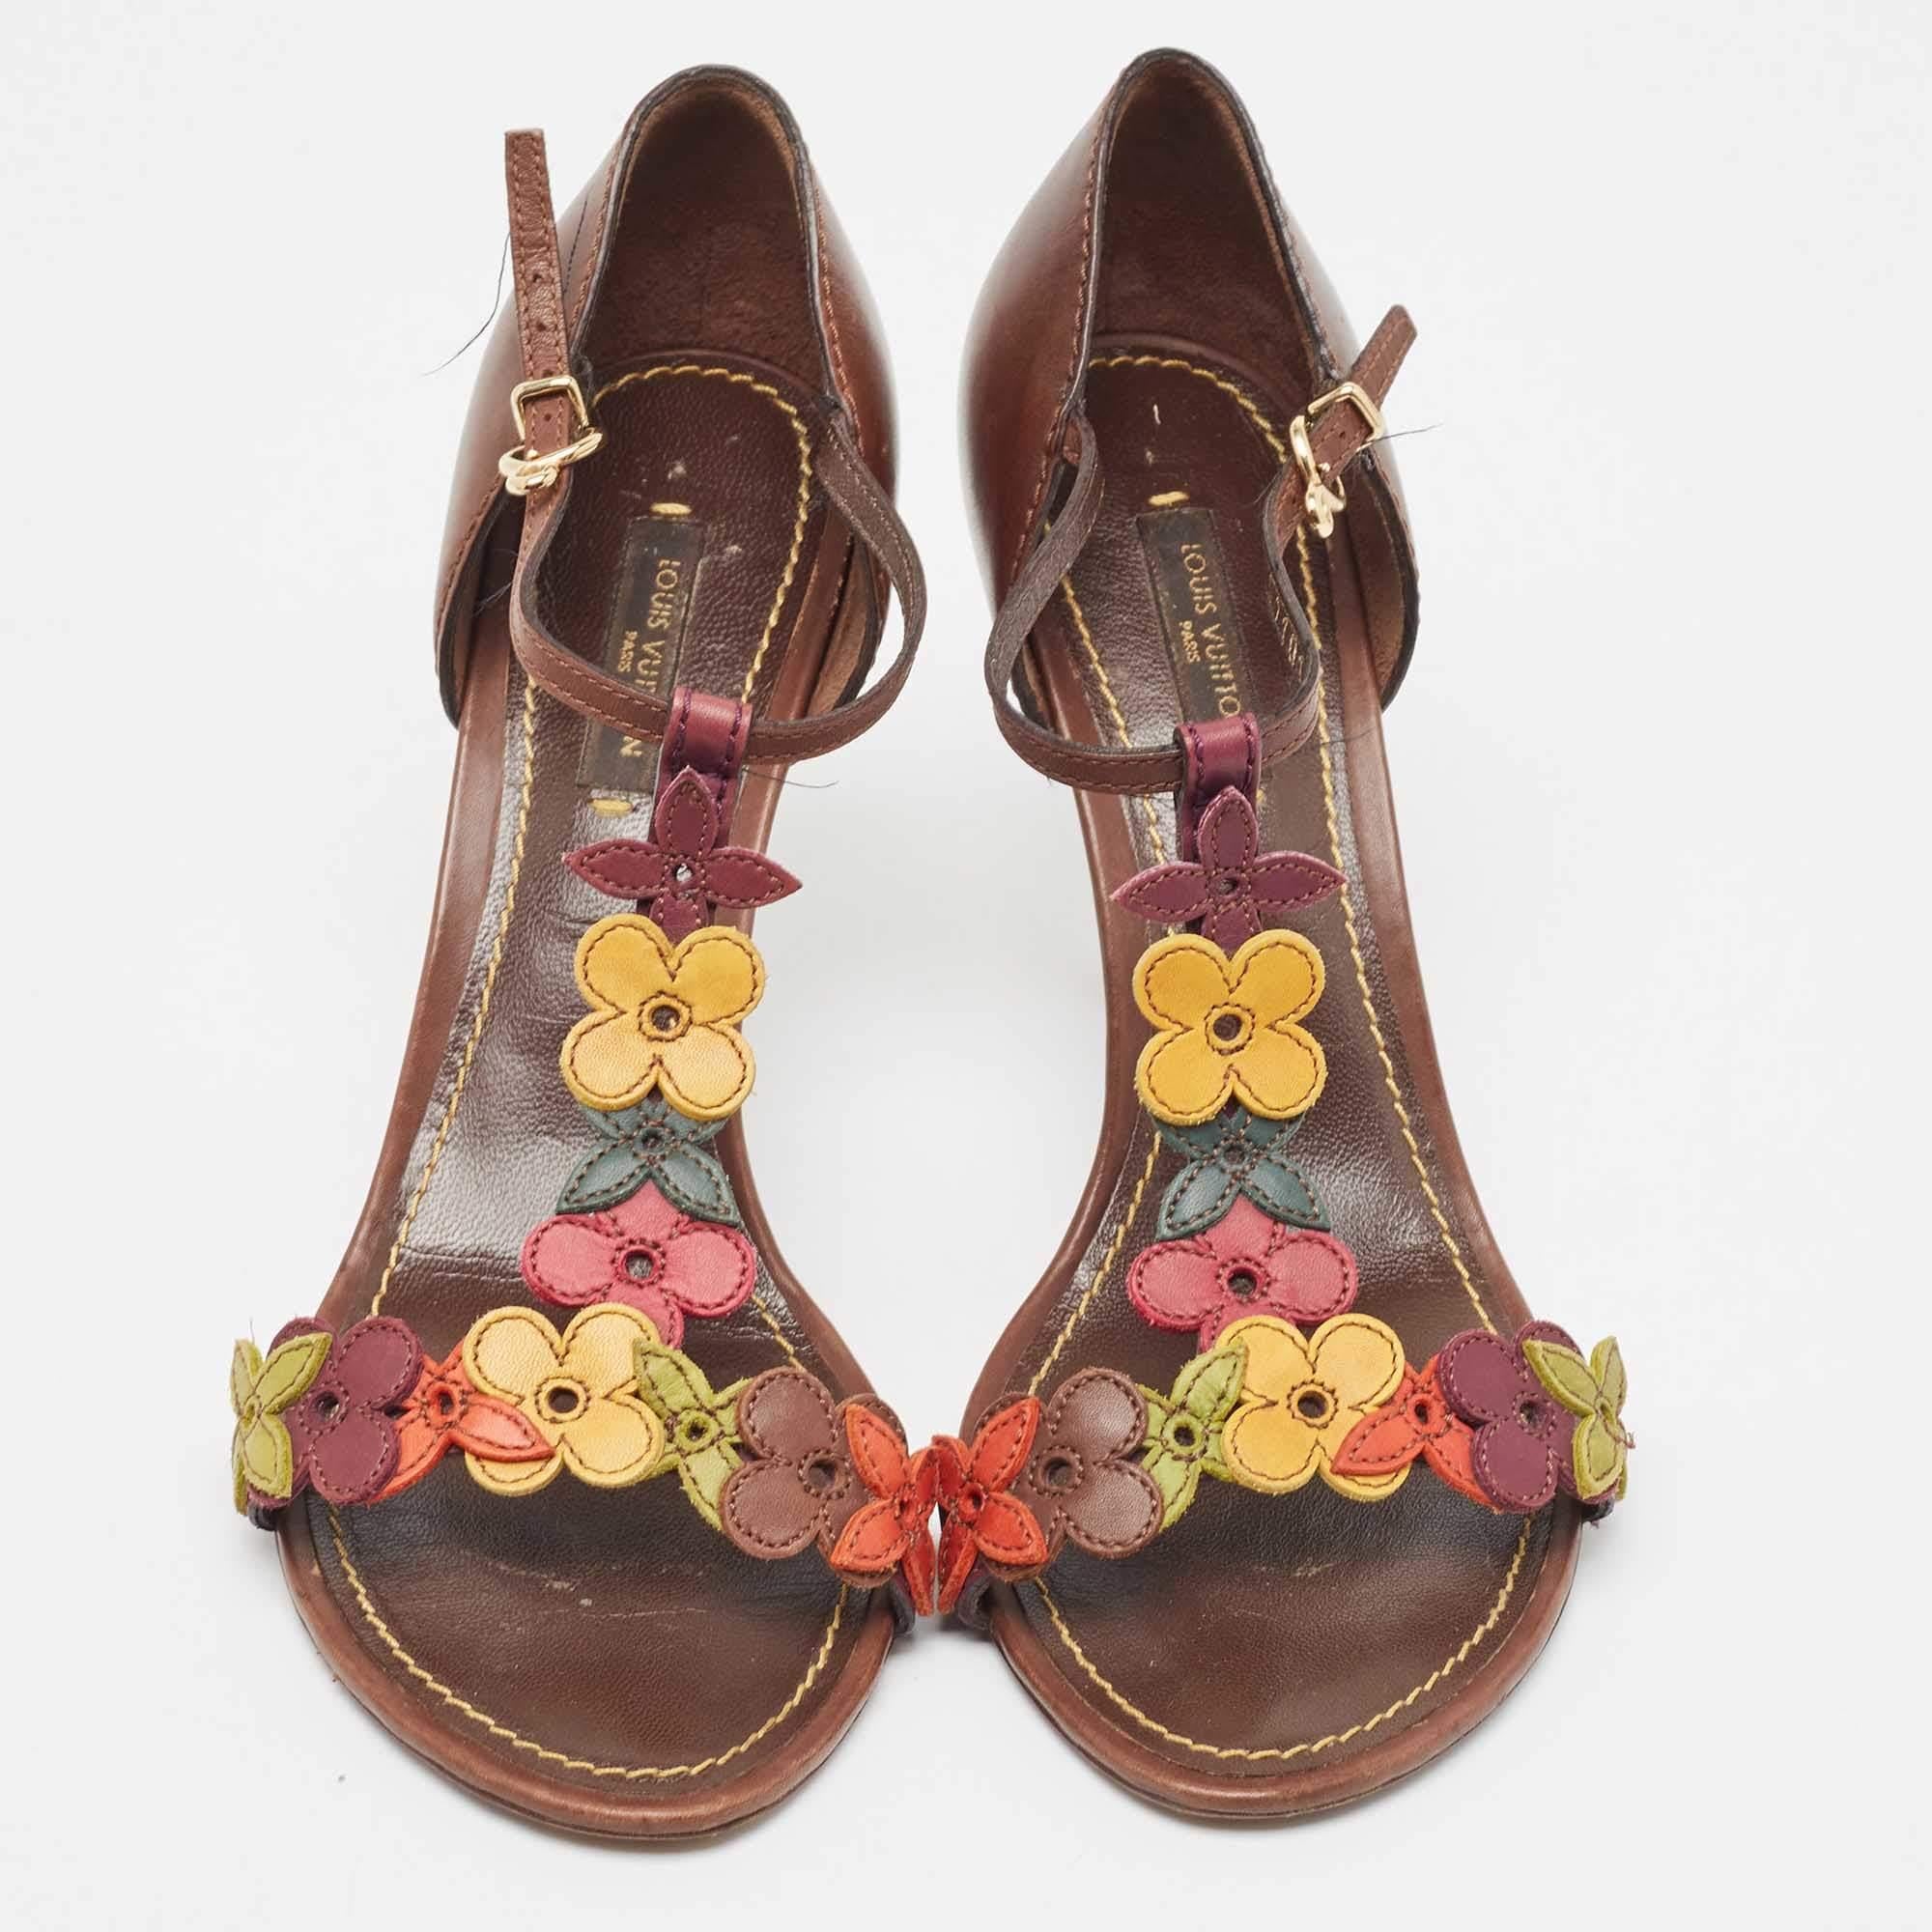 Stellen Sie sich eine Schuhsammlung mit zeitlosen Paaren zusammen, damit Sie sie lange tragen können, unabhängig von der Jahreszeit oder dem Trend. Wählen Sie Paare wie dieses. Es ist ein edles, raffiniertes Design mit blühenden Blumen und hohen